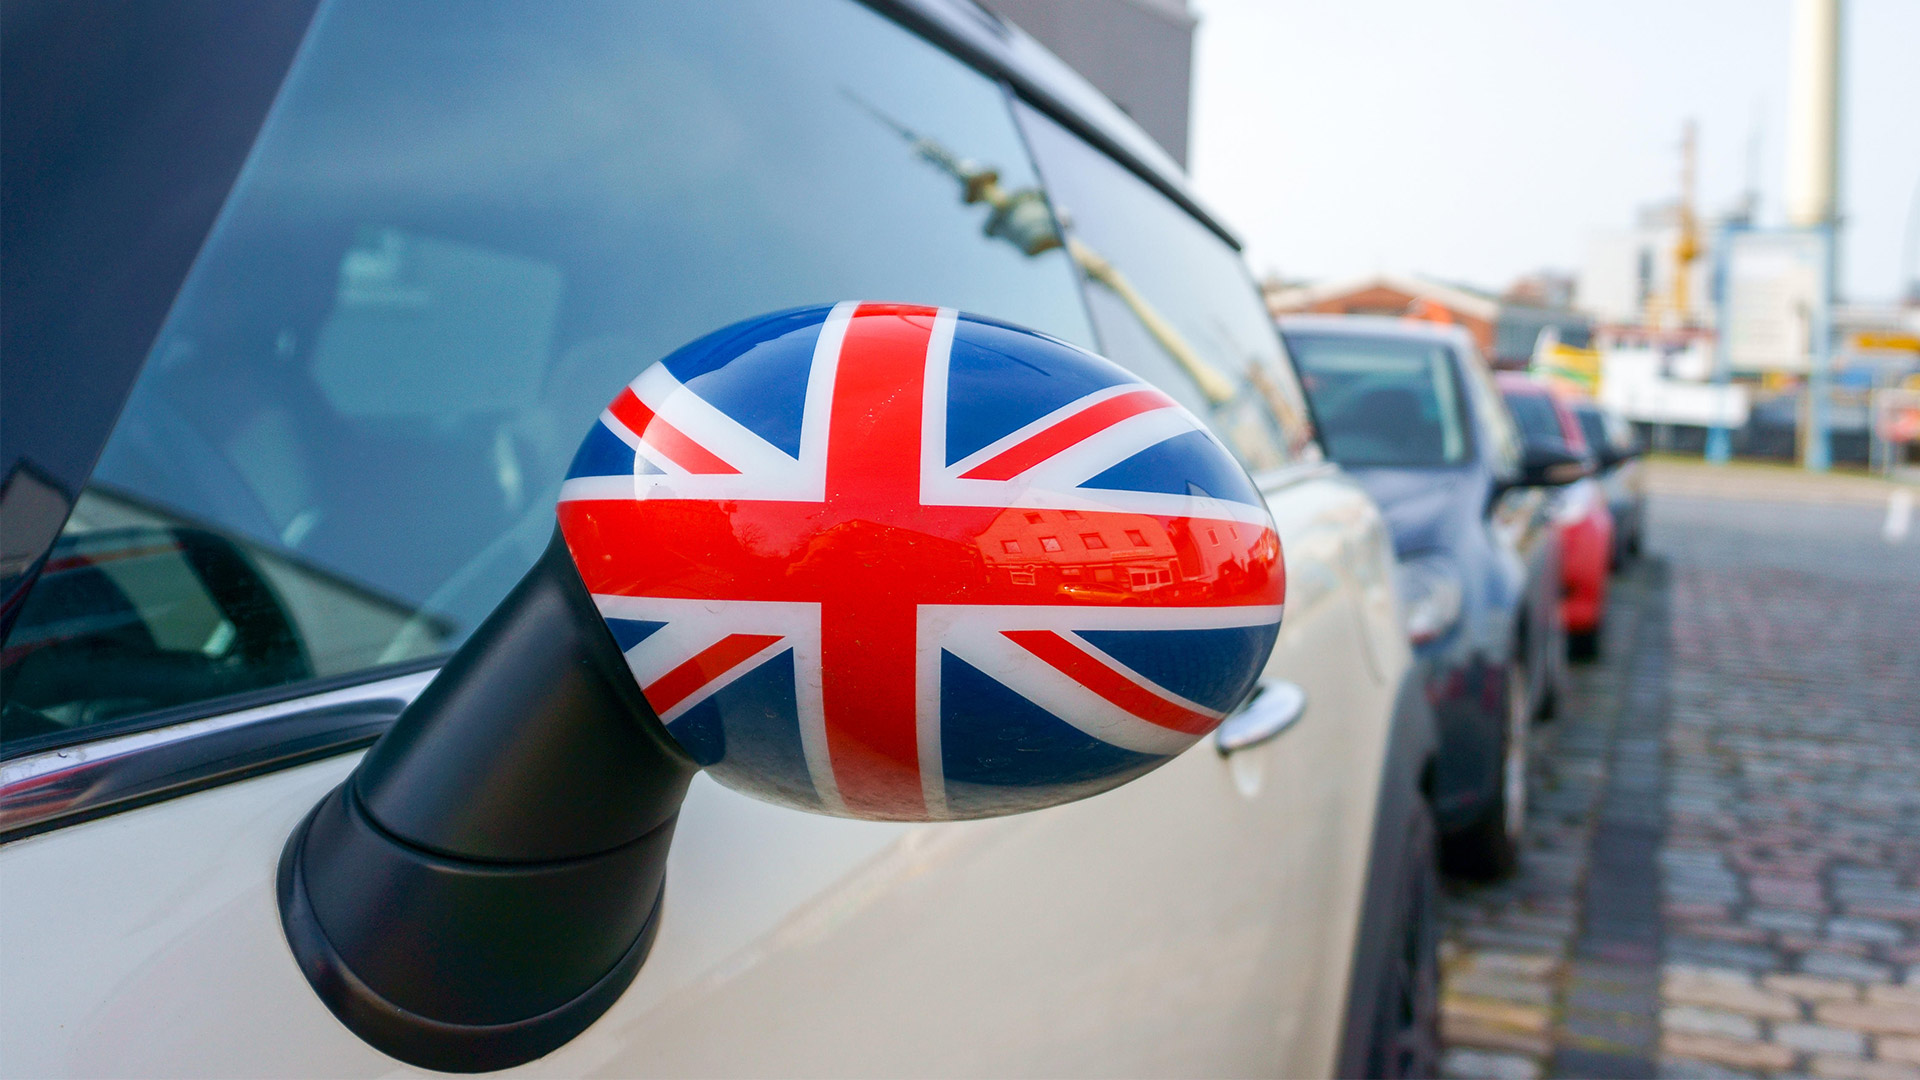 Autoaußenspiegel dekoriert mit Großbritannien-Flagge | picture alliance / Zoonar